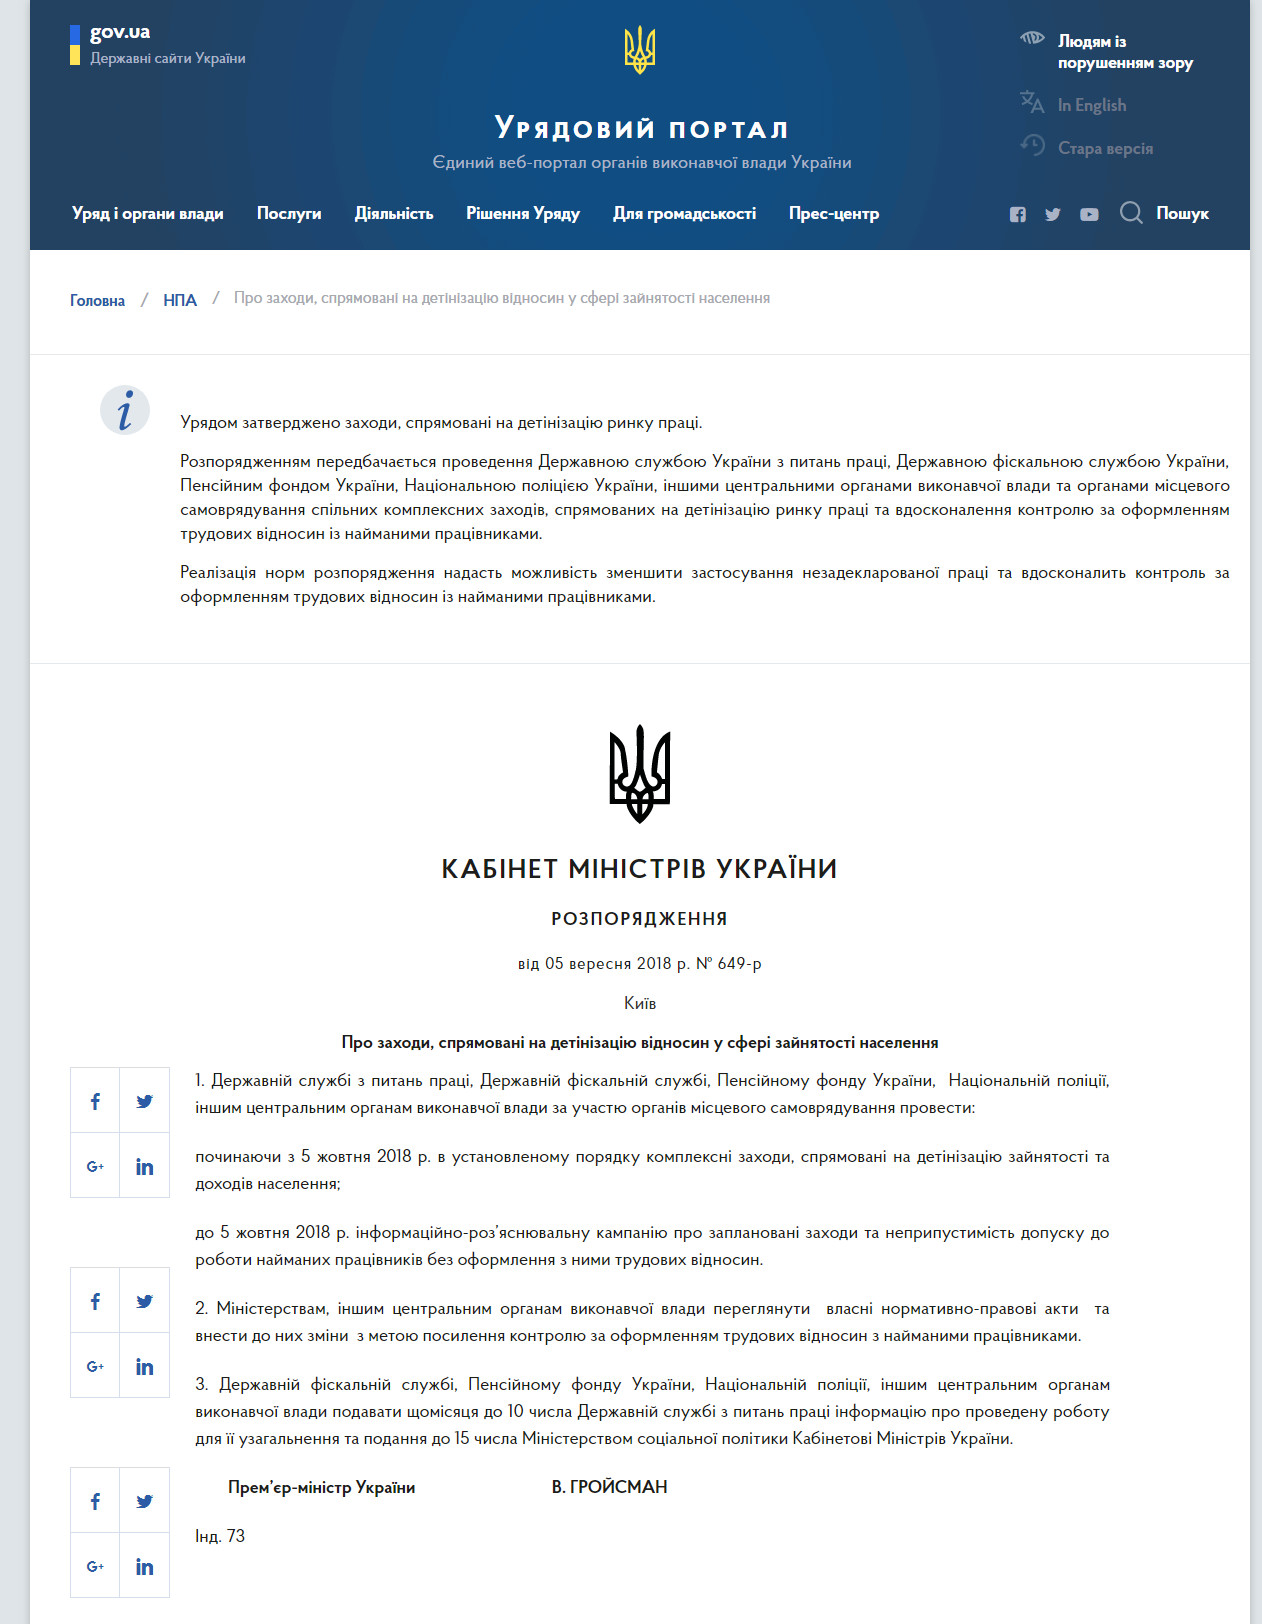 https://www.kmu.gov.ua/ua/npas/pro-zahodi-spryamovani-na-detinizaciyu-vidnosin-u-sferi-zajnyatosti-naselennya